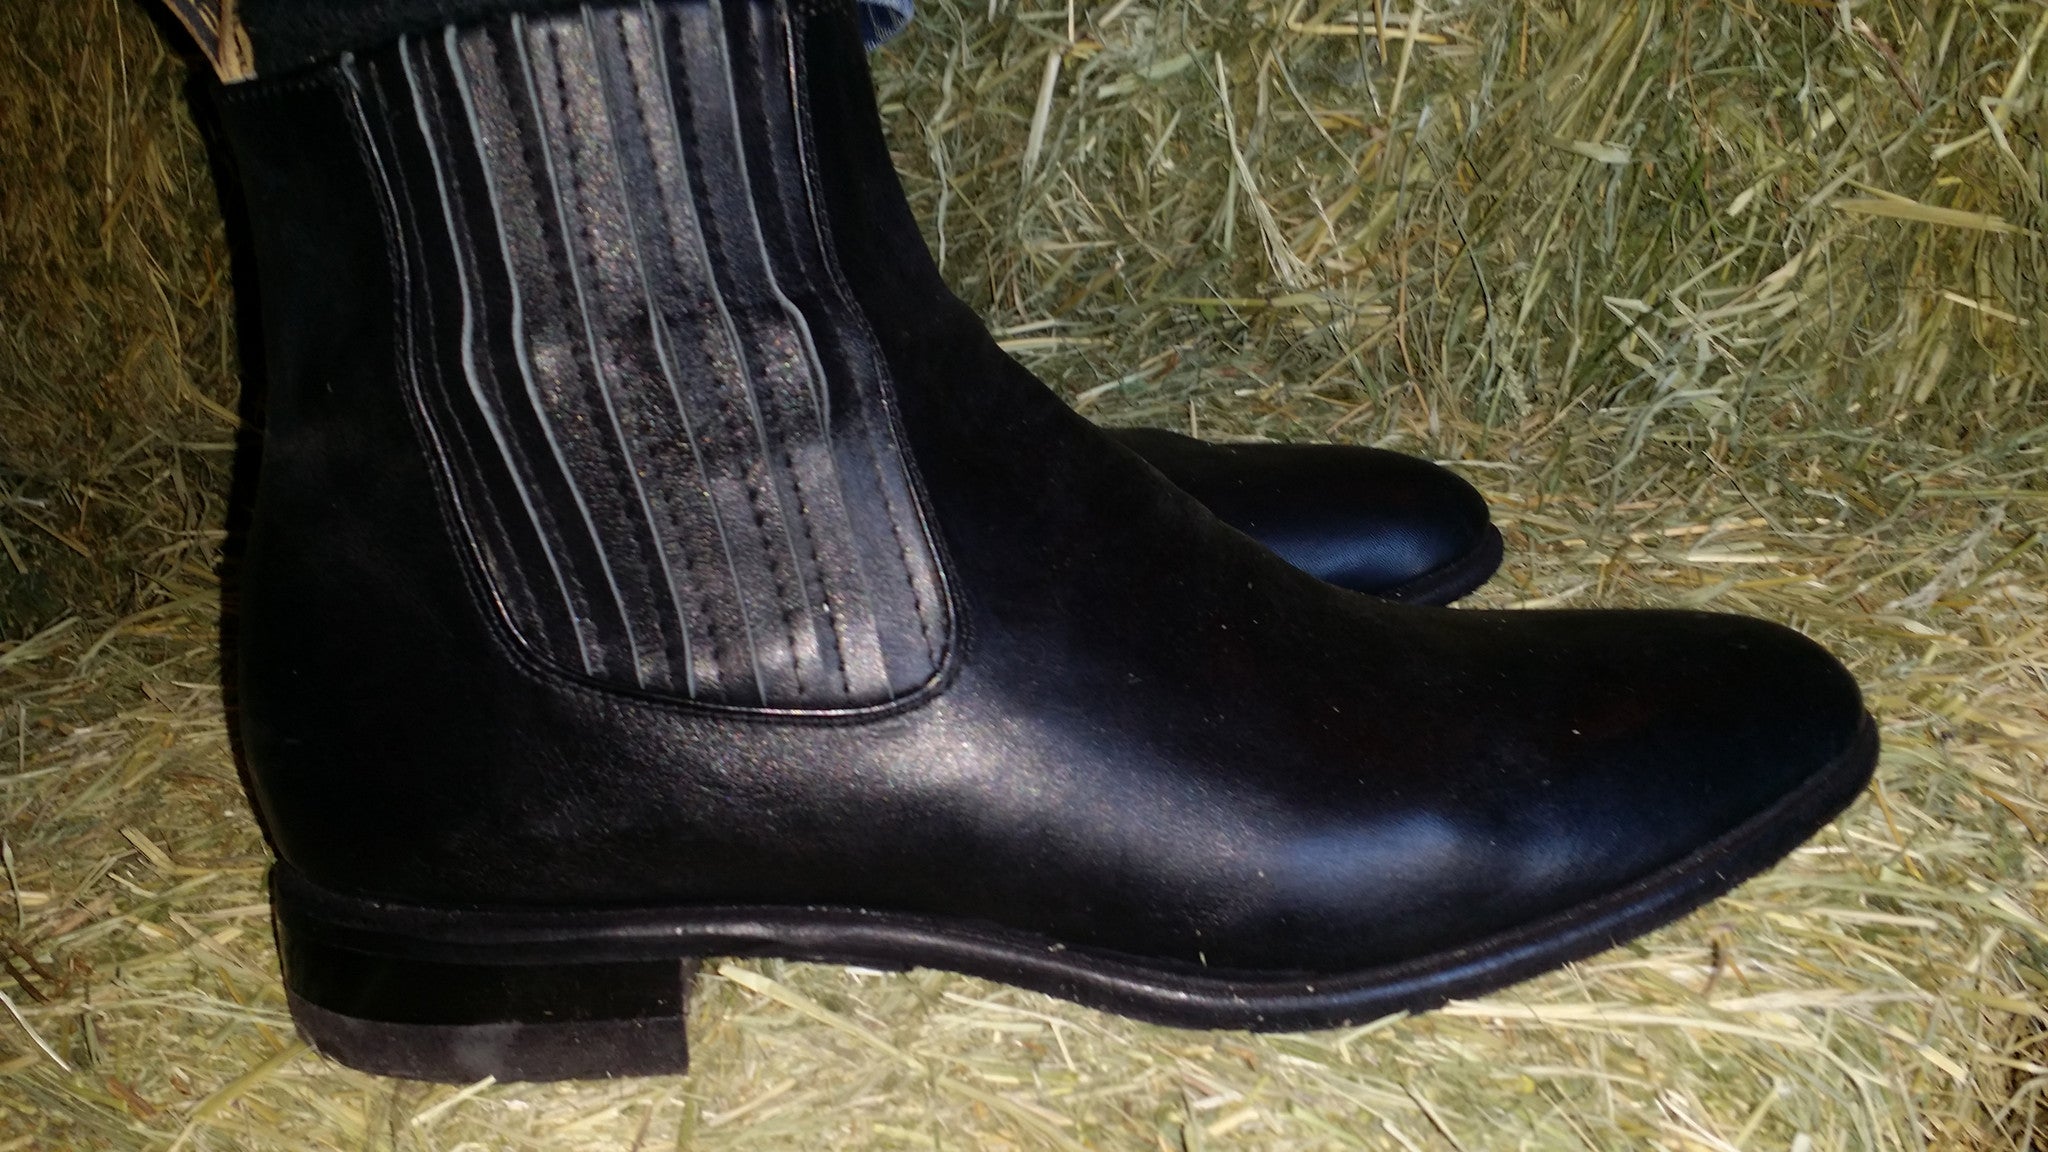 Charro color Negro . Charro Boots